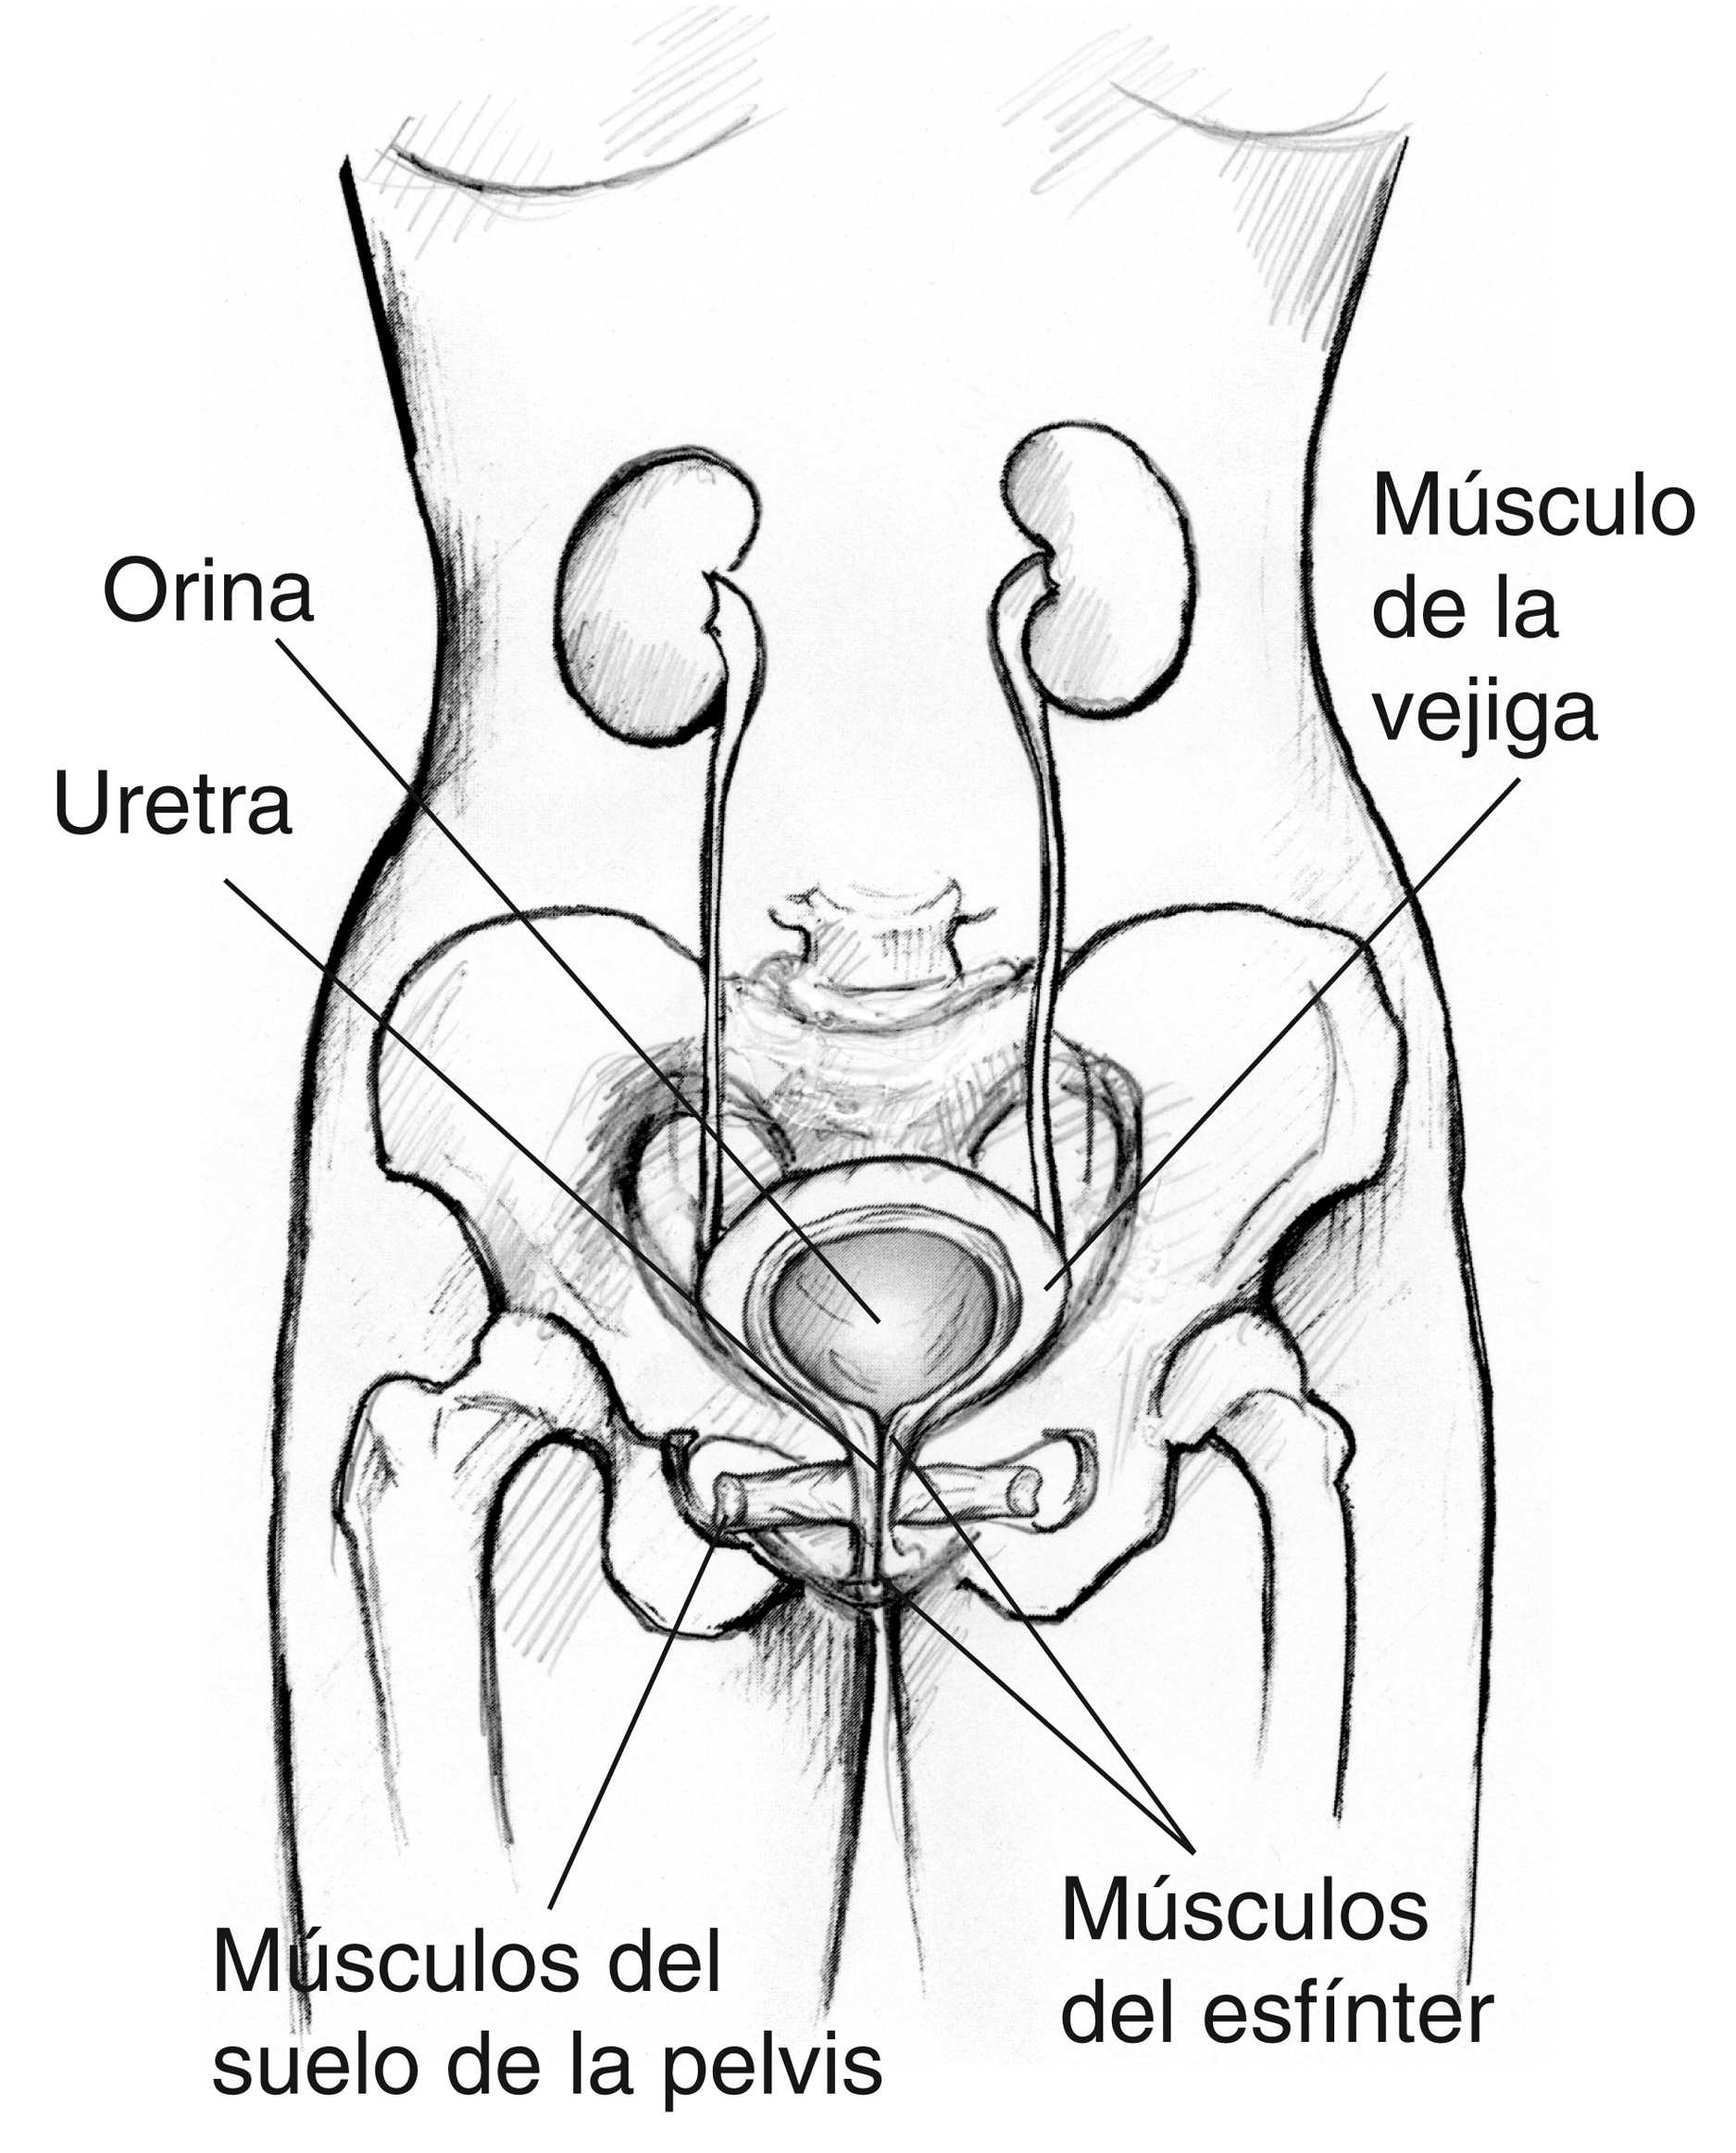 Anatomica frontal del tracto urinario femenino, se delinea los musculos del  suelo de la pelvis, musculos del enfinter, musculo de la vejiga, la uretra  y la orino - Media Asset - NIDDK